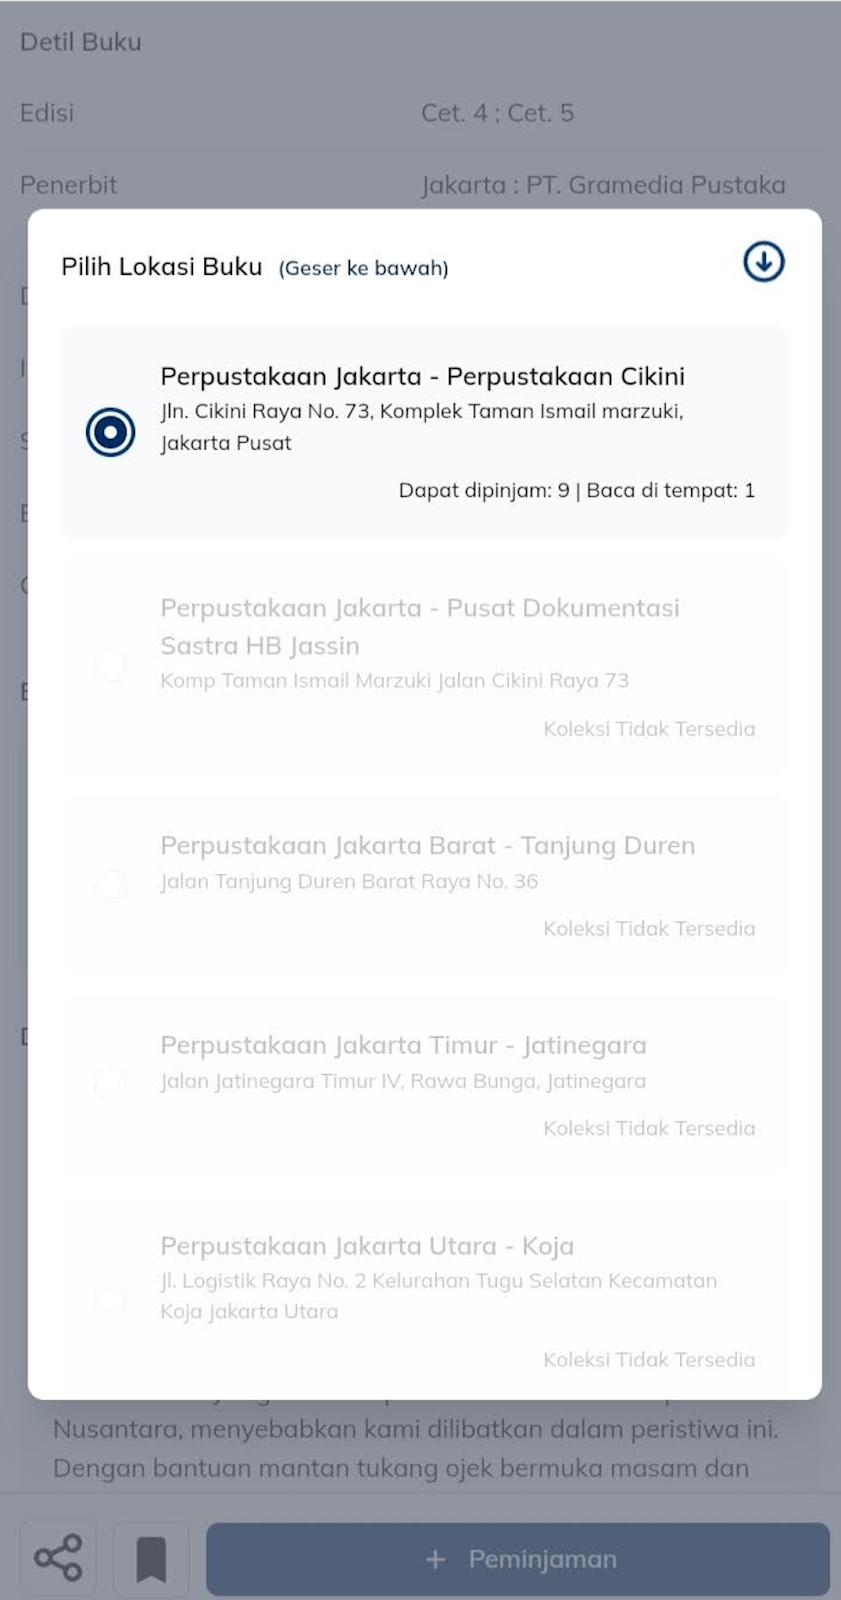 Daftar perpustakaan di Jakarta